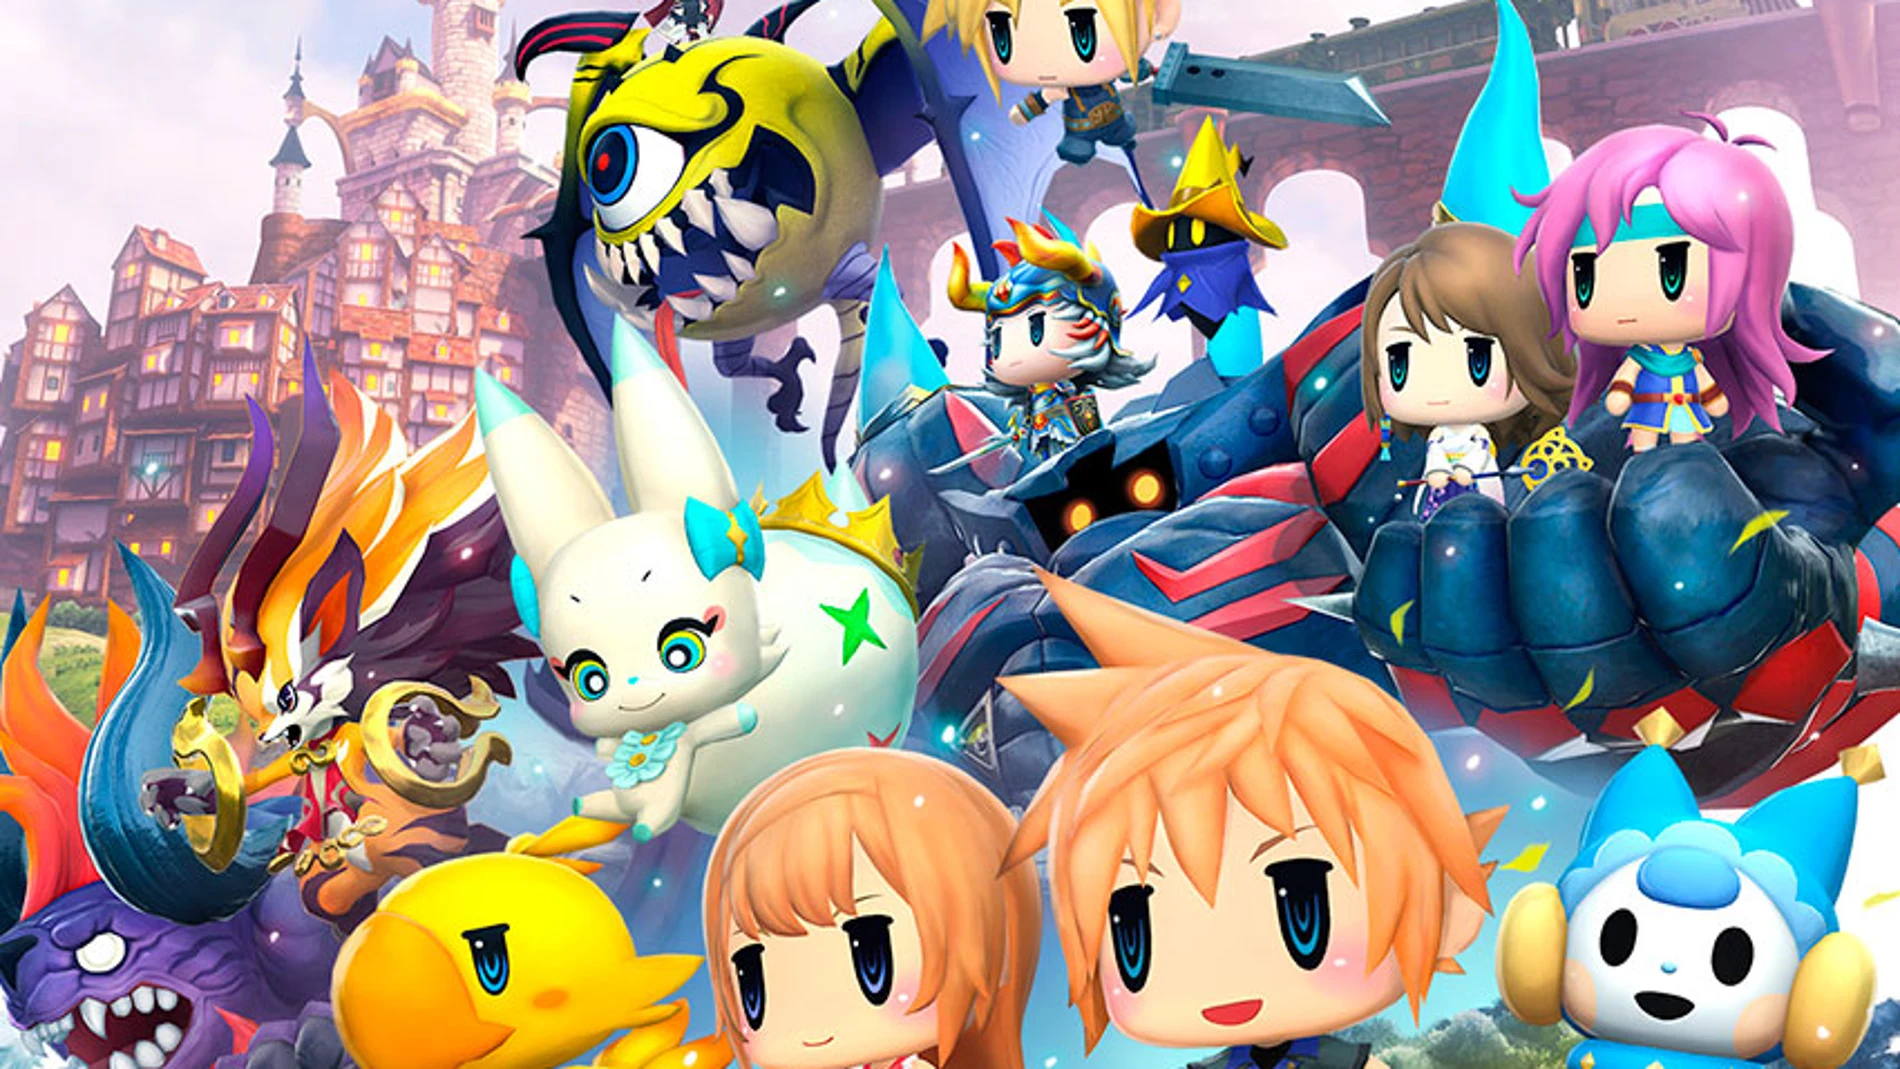 World of Final Fantasy confirma demo gratuita en PlayStation 4 y PS Vita